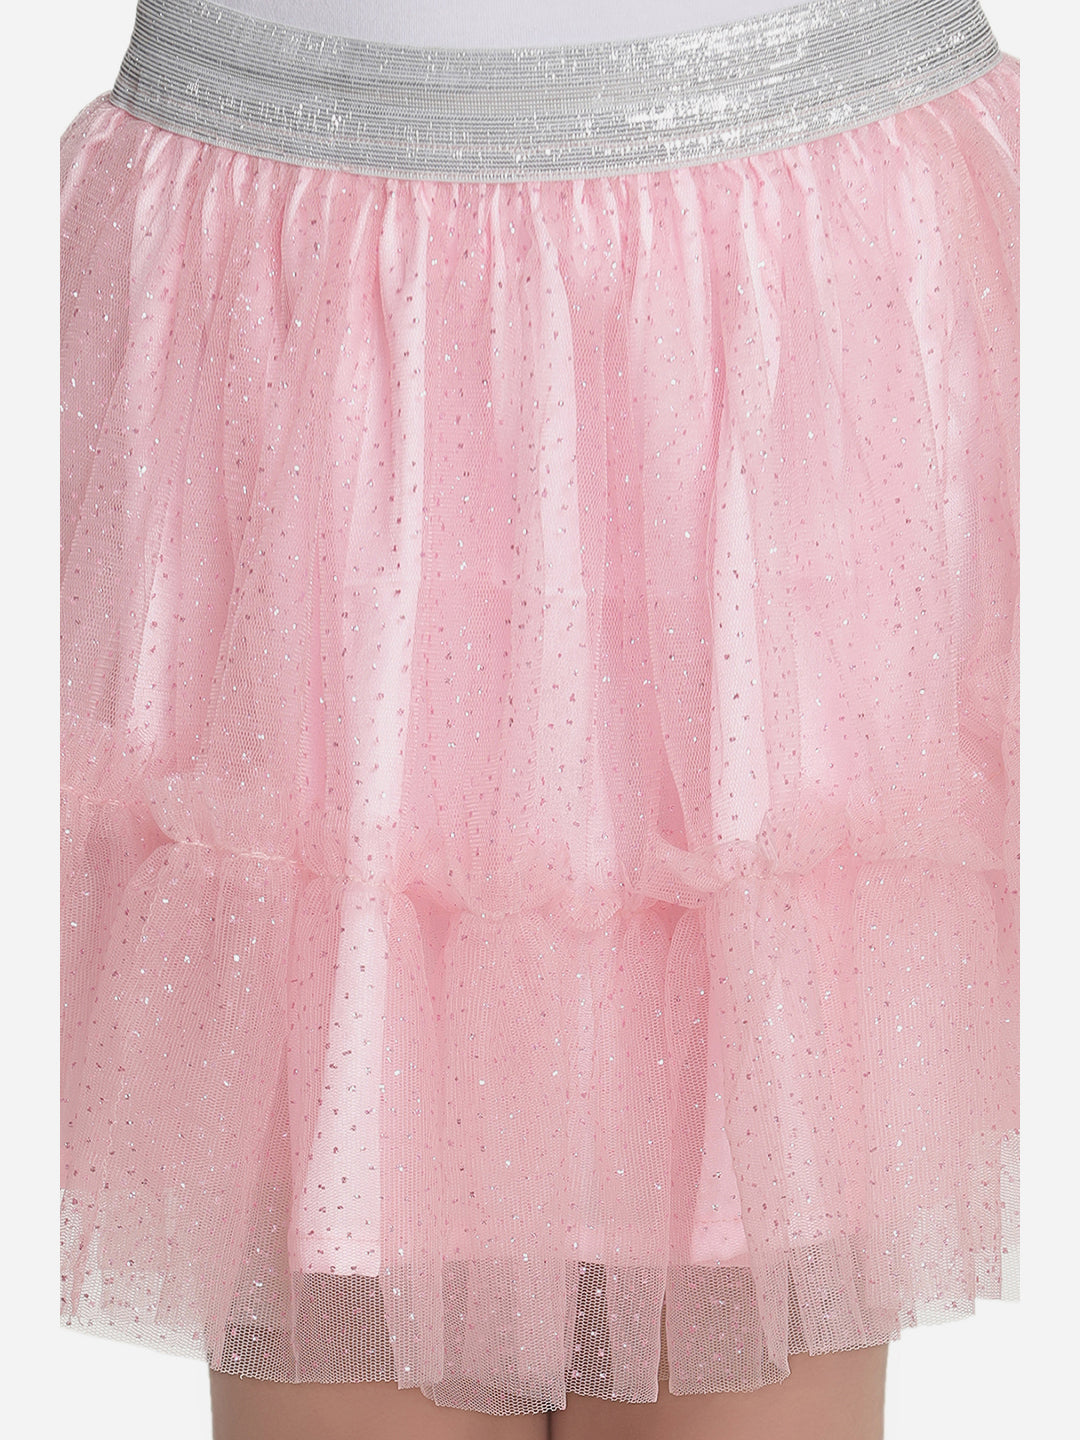 Girls Glitter Pink Net Skirt with Silver Elastic Waist